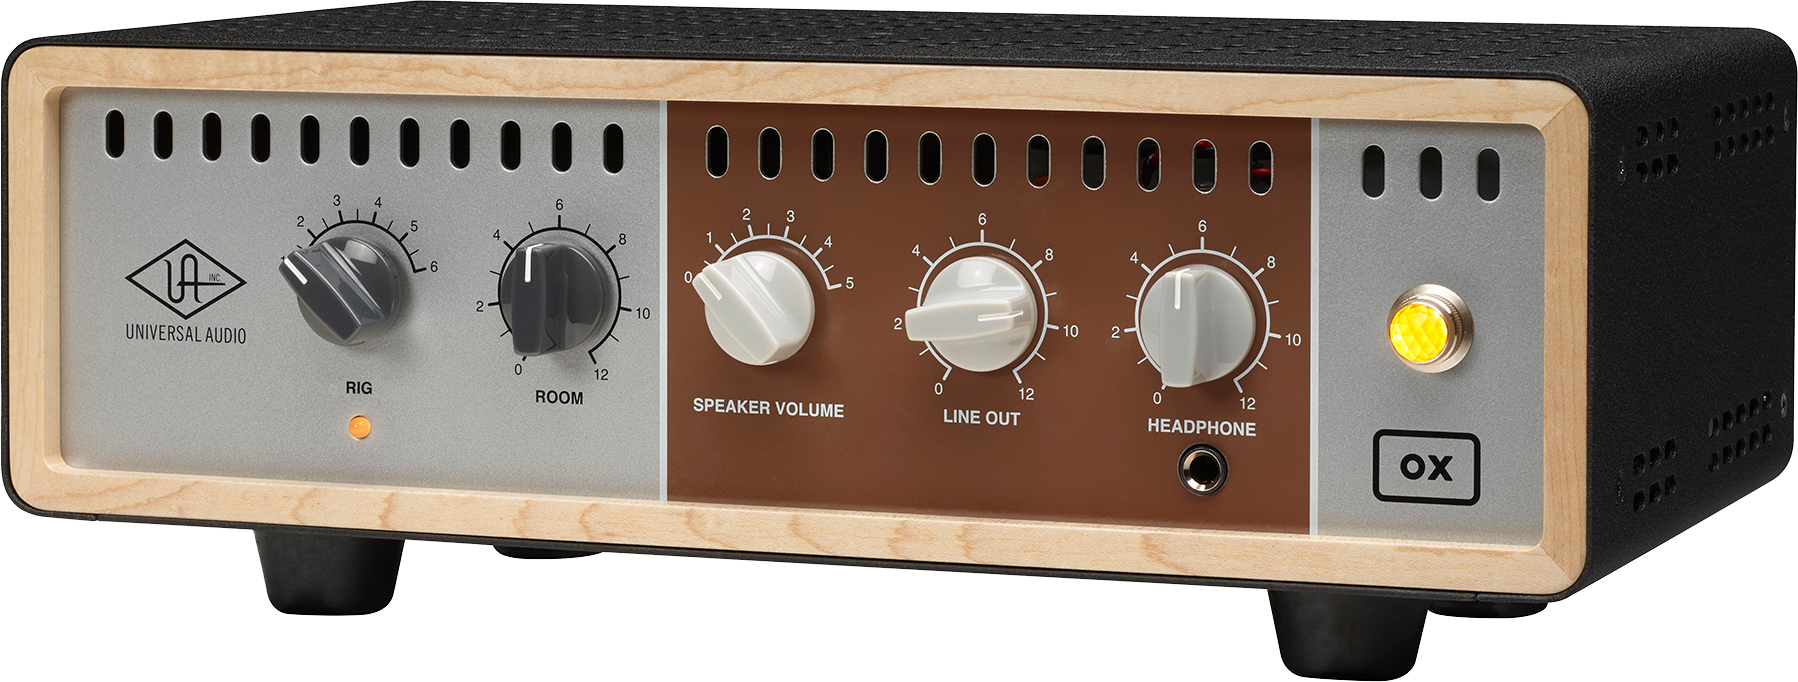 Universal Audio Ox Amp Top Box - Atenuador de potencia - Main picture